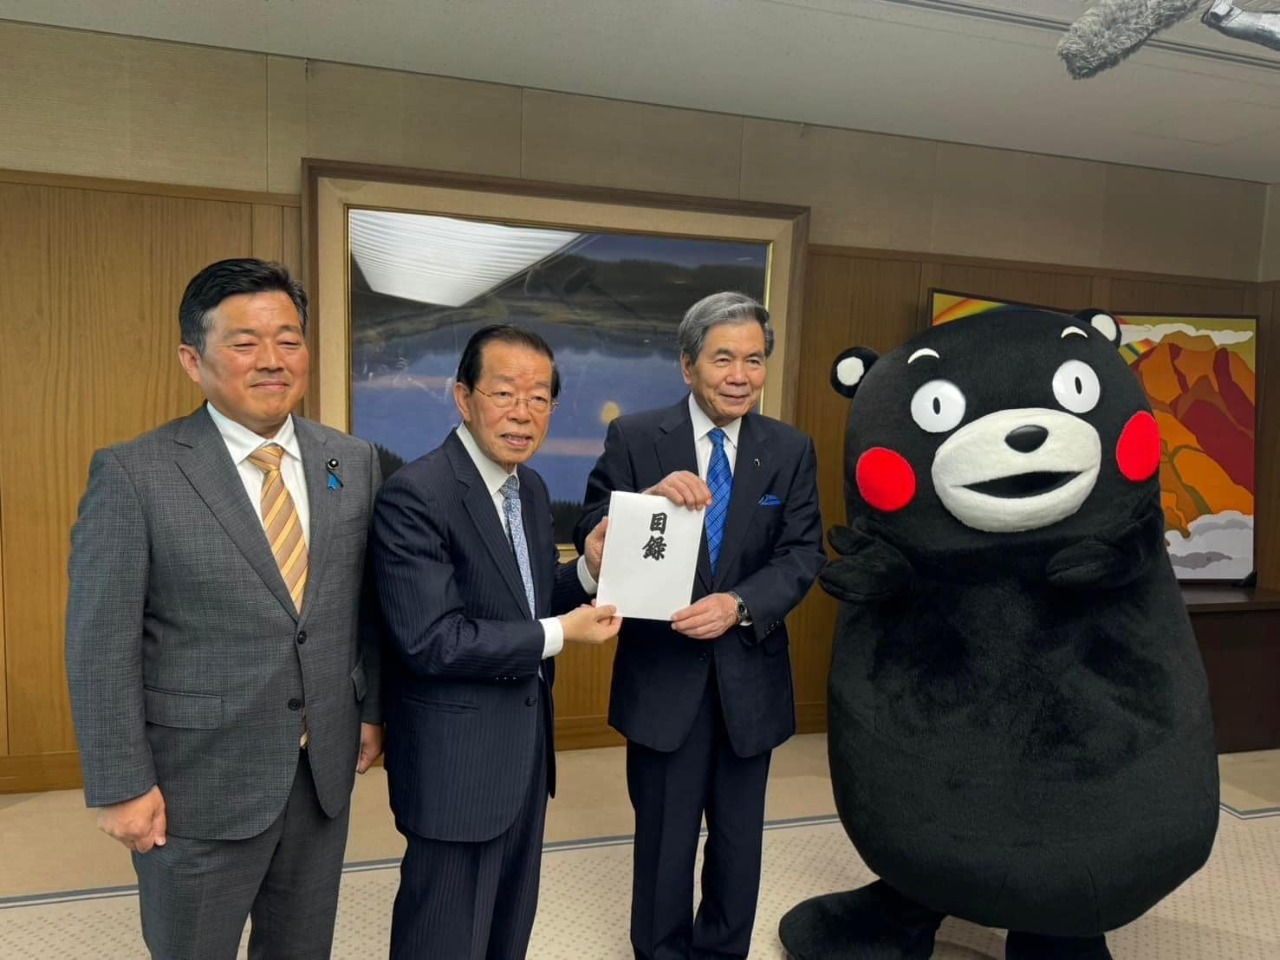 謝長廷・駐日代表が熊本県庁を訪問、蒲島知事から震災義援金が贈られる